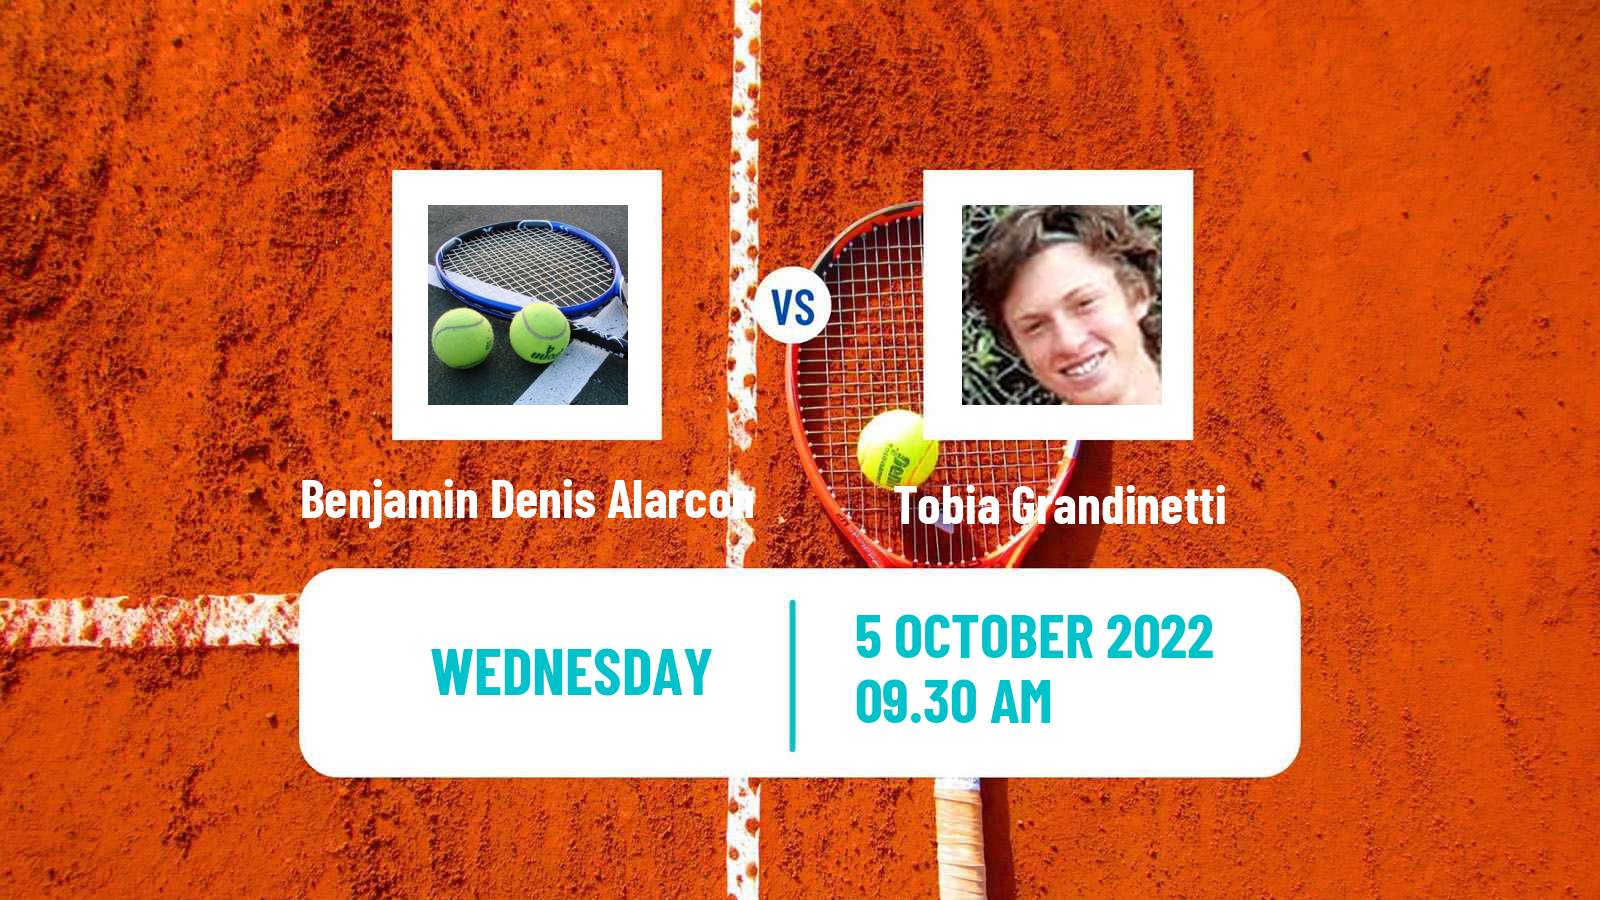 Tennis ITF Tournaments Benjamin Denis Alarcon - Tobia Grandinetti